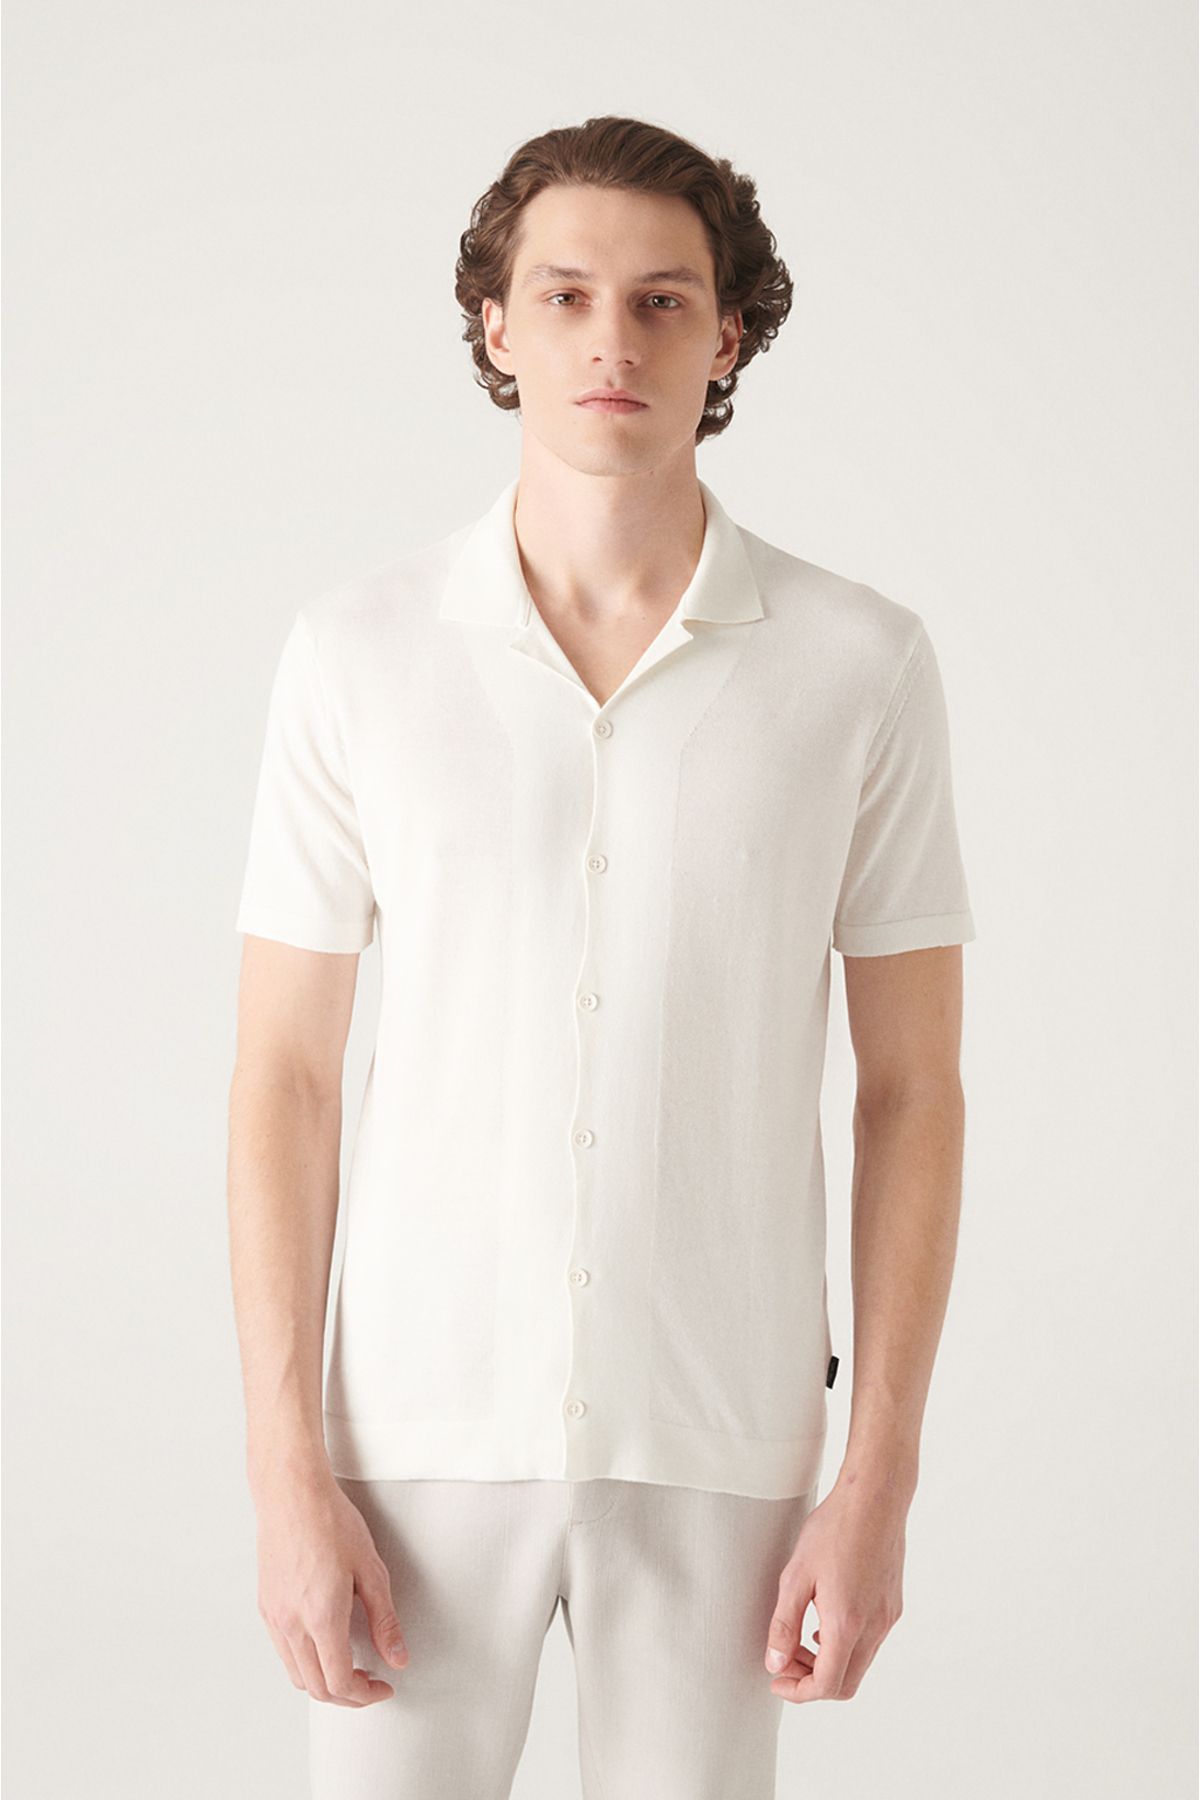 Avva تی شرت بافتنی مردانه یقه سفید کوبایی با دکمه های استاندارد متناسب برش معمولی B005008